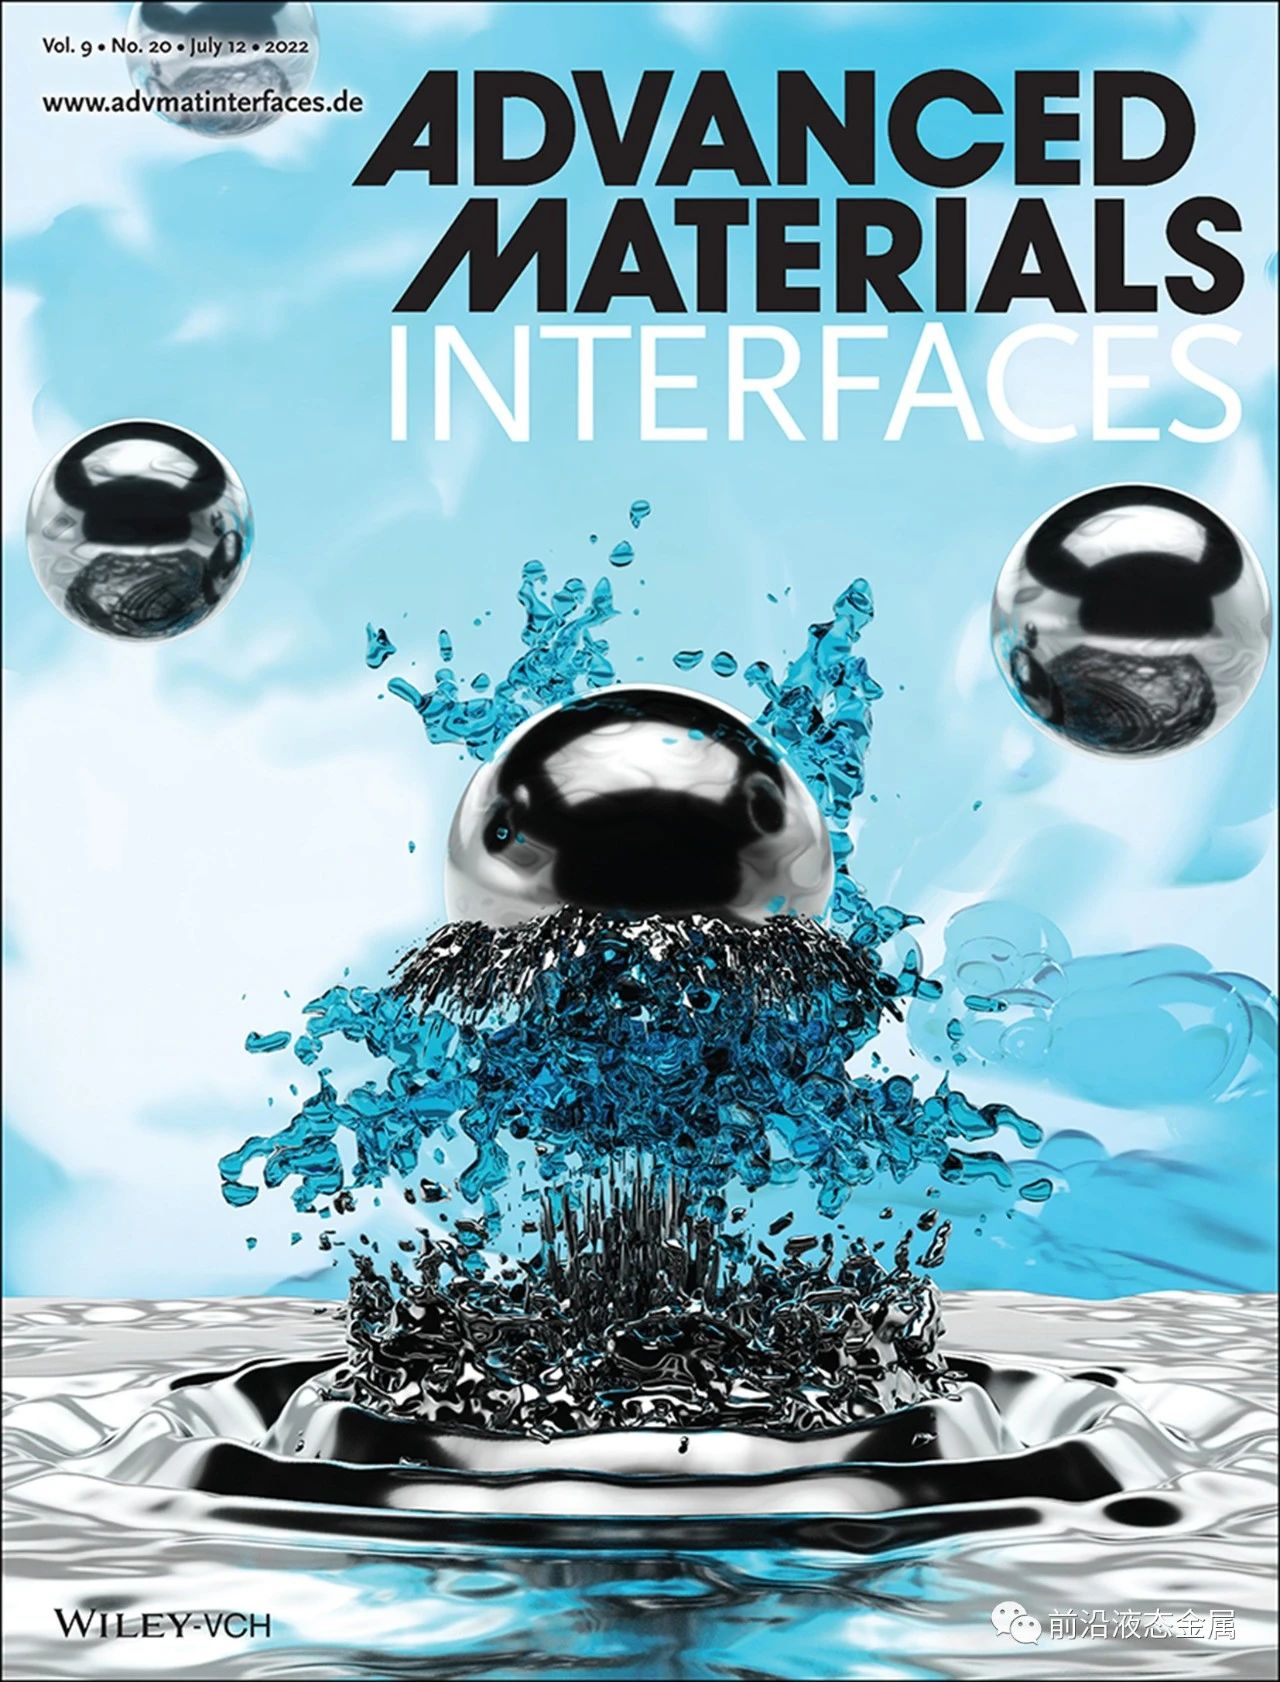 中科院理化所刘静团队《Advanced Materials Interfaces》封面文章